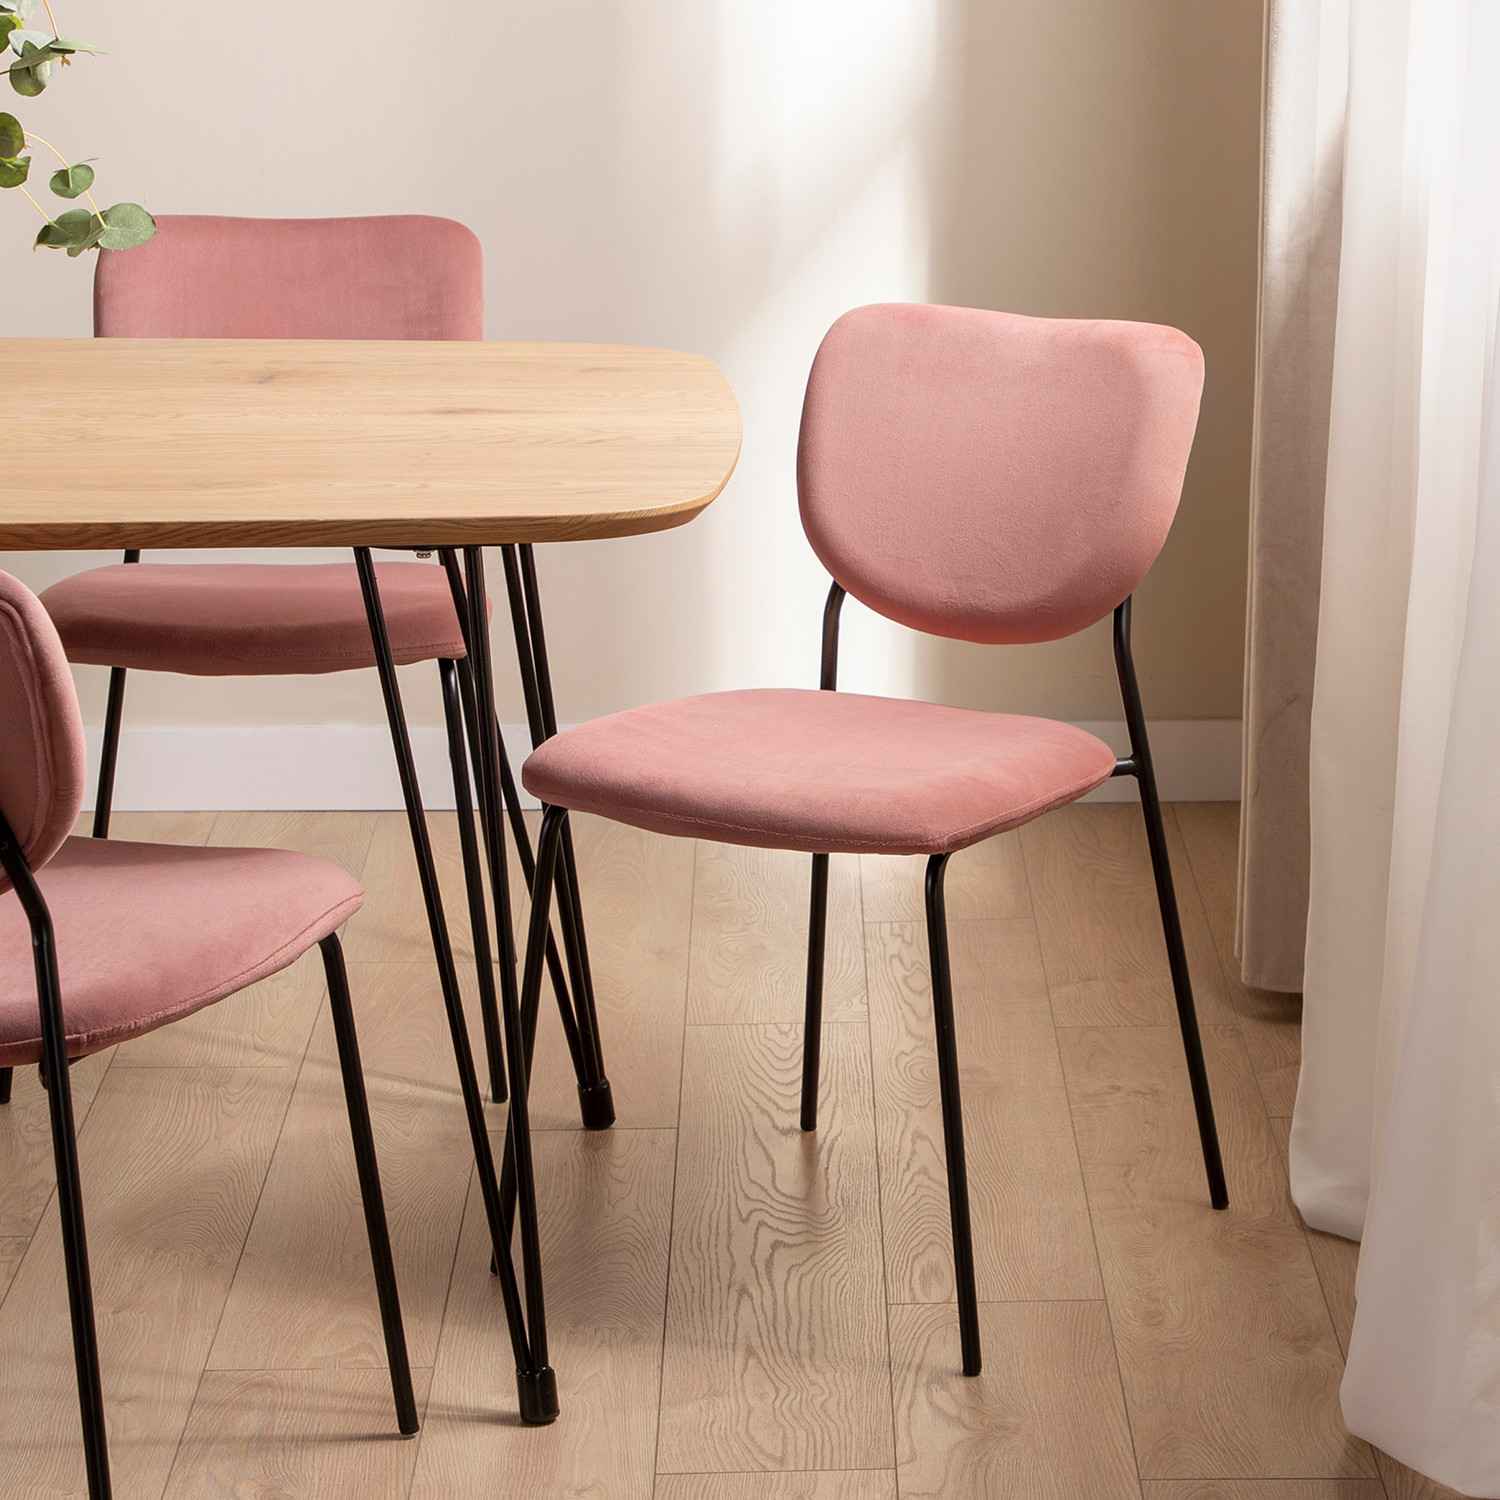 La silla de comedor Taylor en terciopelo rosa es la apuesta perfecta para los amantes del diseño atemporal. Sus patas metálicas en color negro